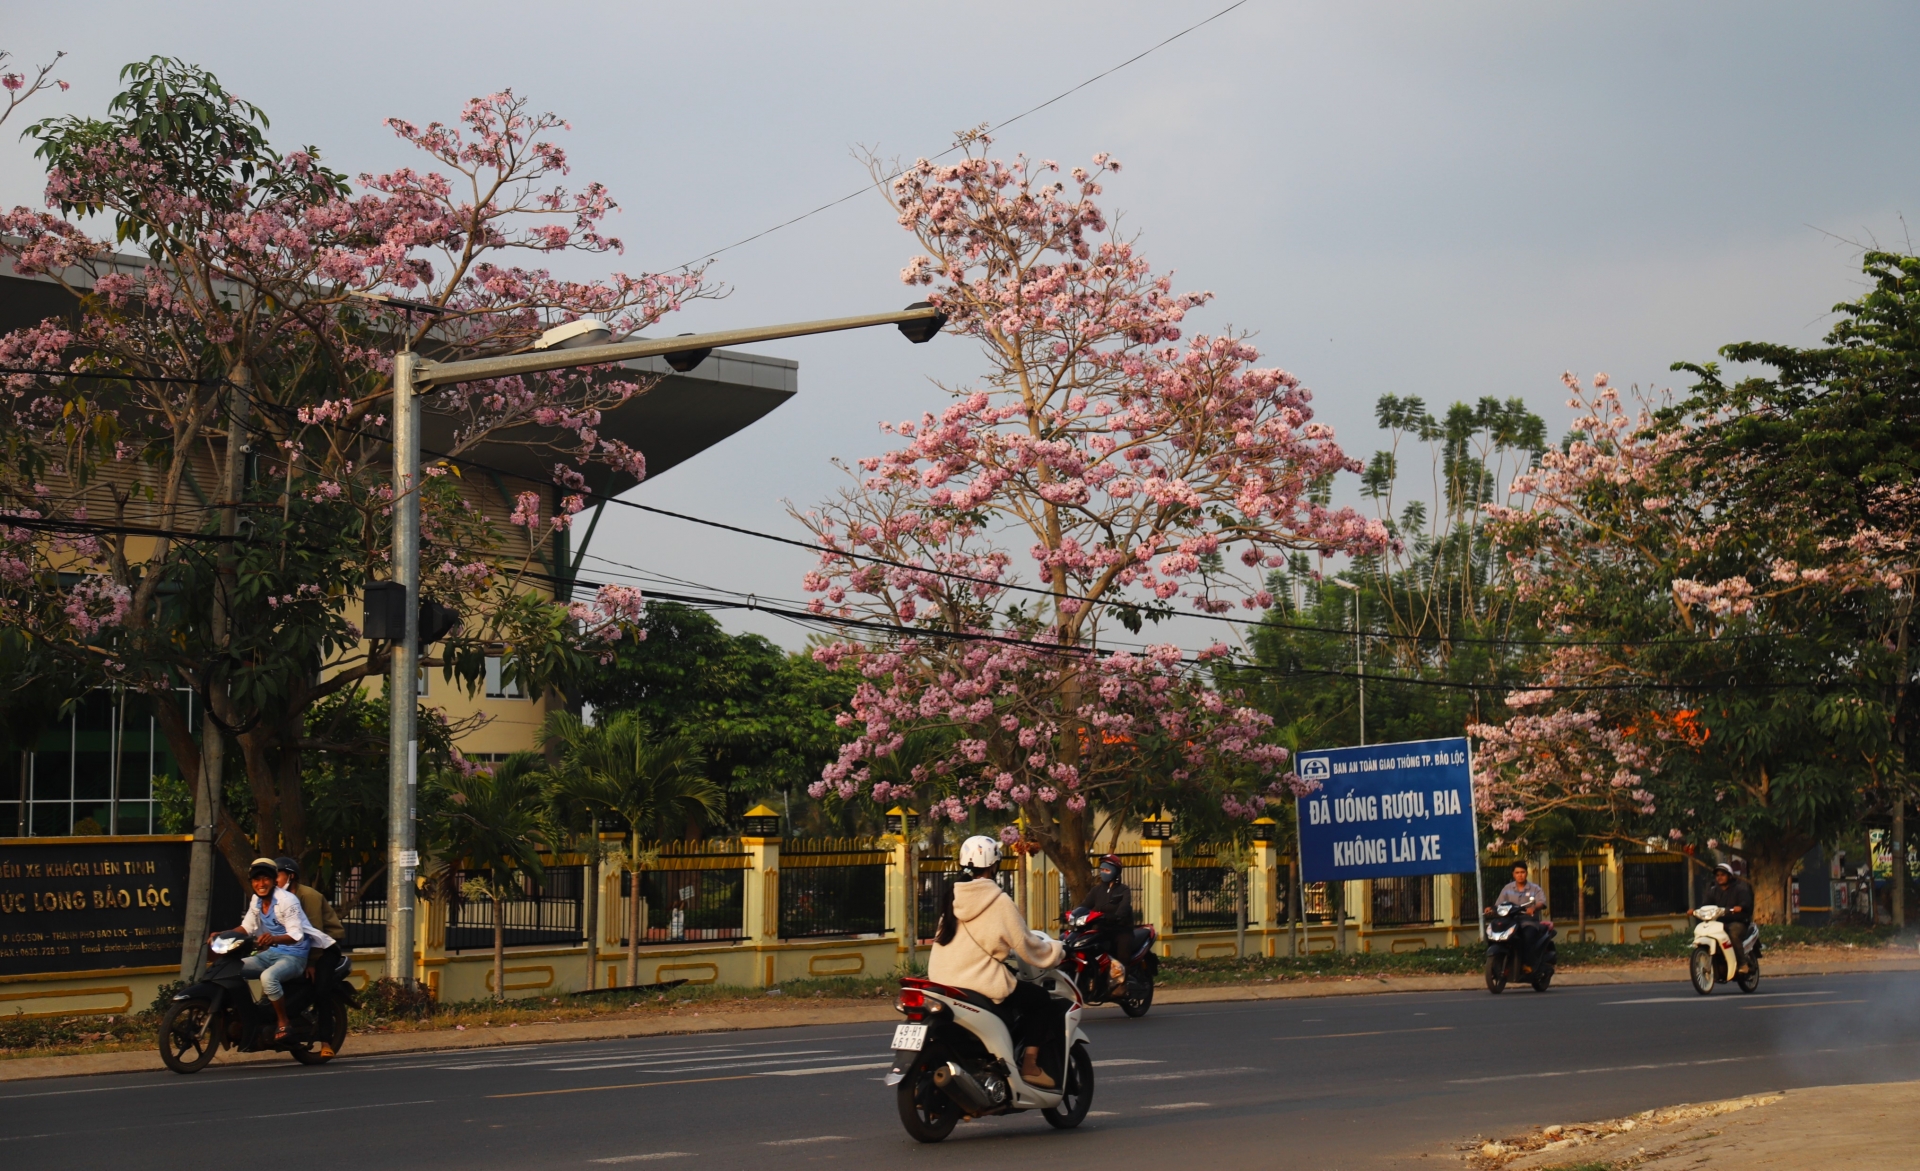 Hồng phấn bung nở tuyệt đẹp trên Quốc lộ 20, đoạn qua bến xe Đức Long (phường Lộc Sơn, TP Bảo Lộc)